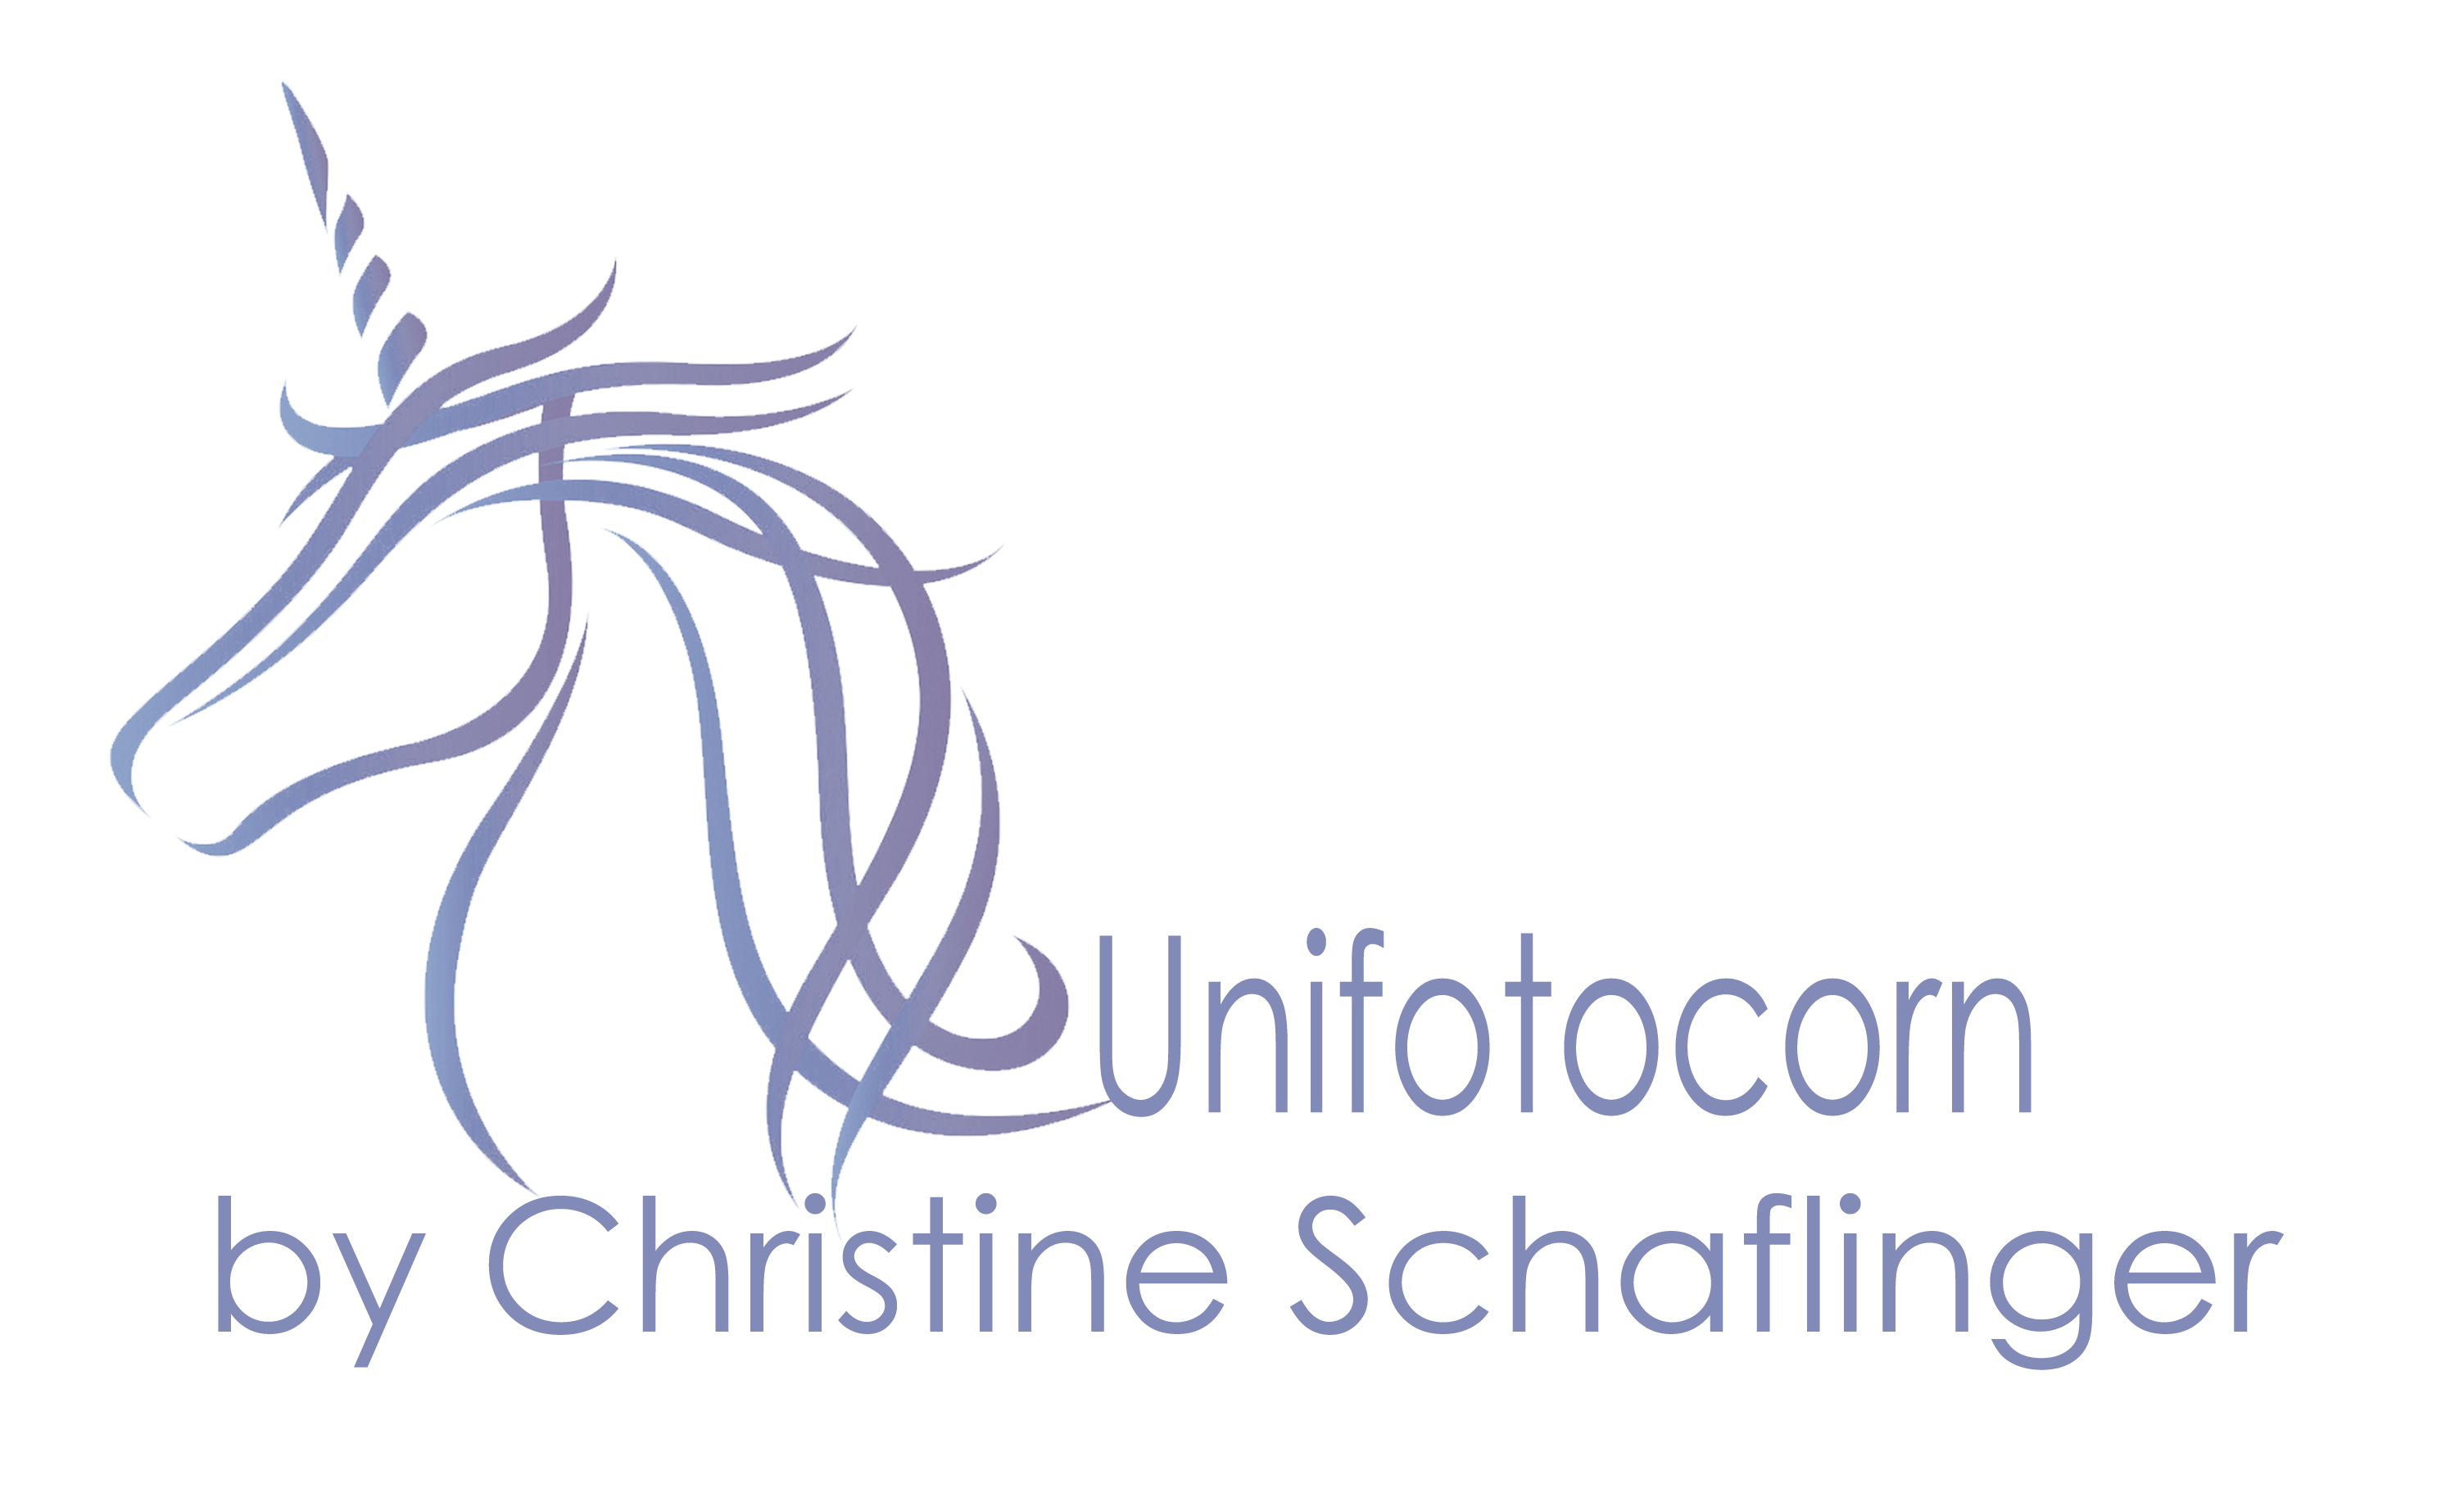 logo_unifotocorn